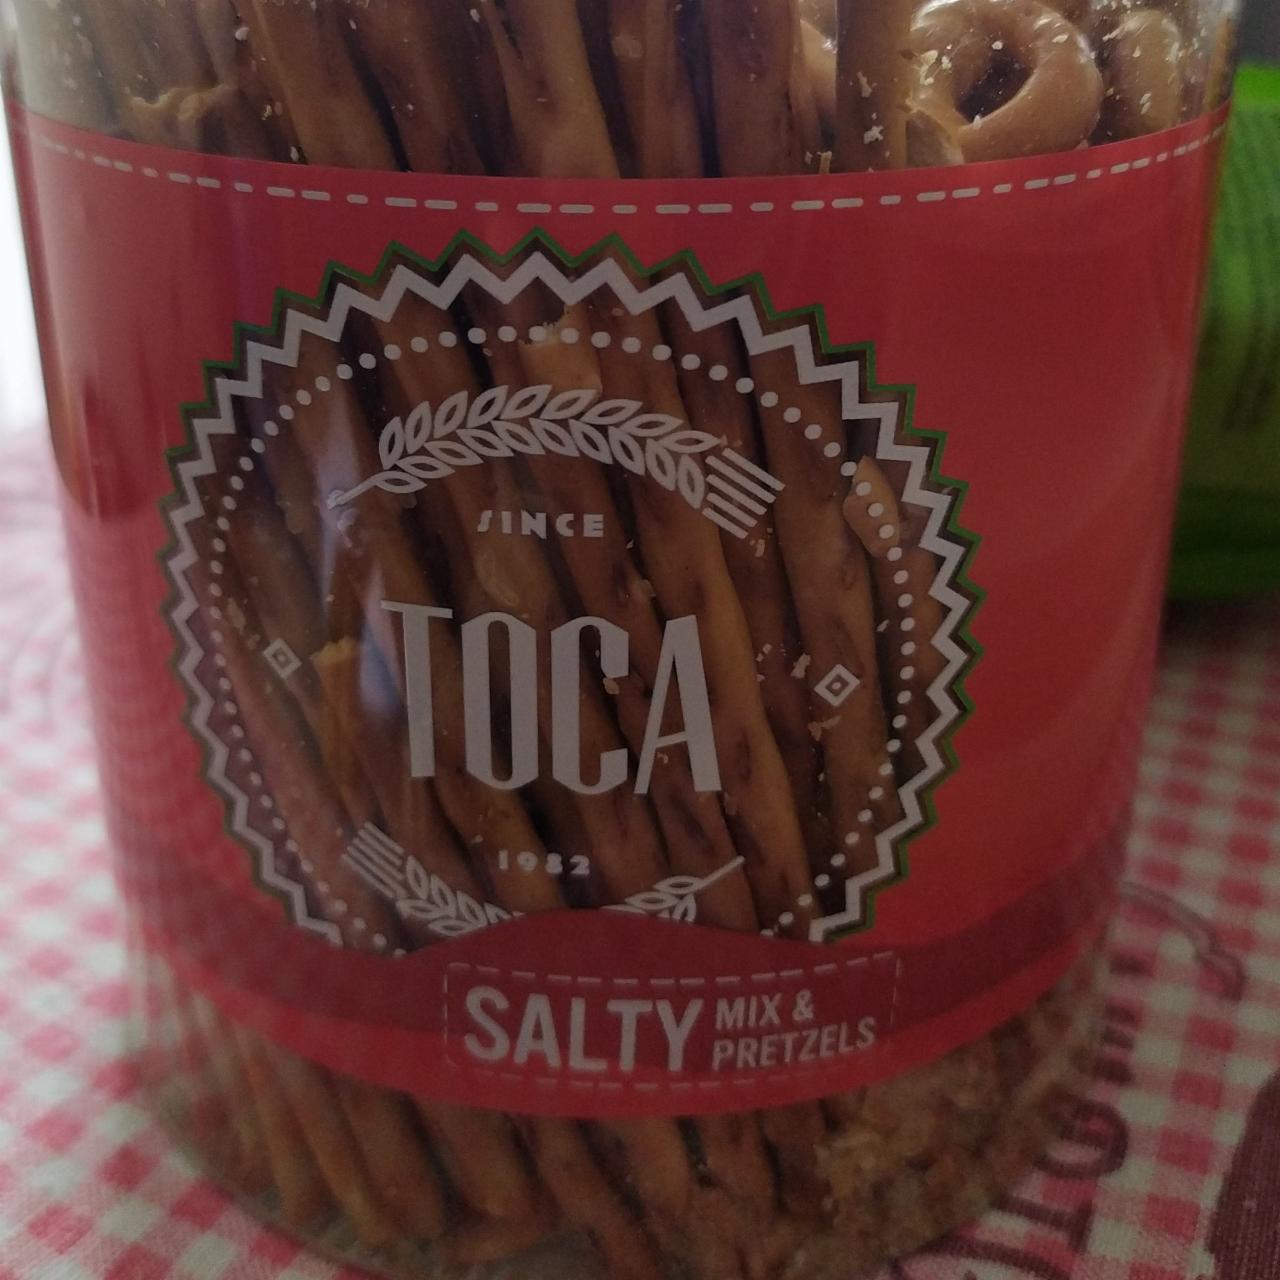 Fotografie - TOCA salty mix & pretzels